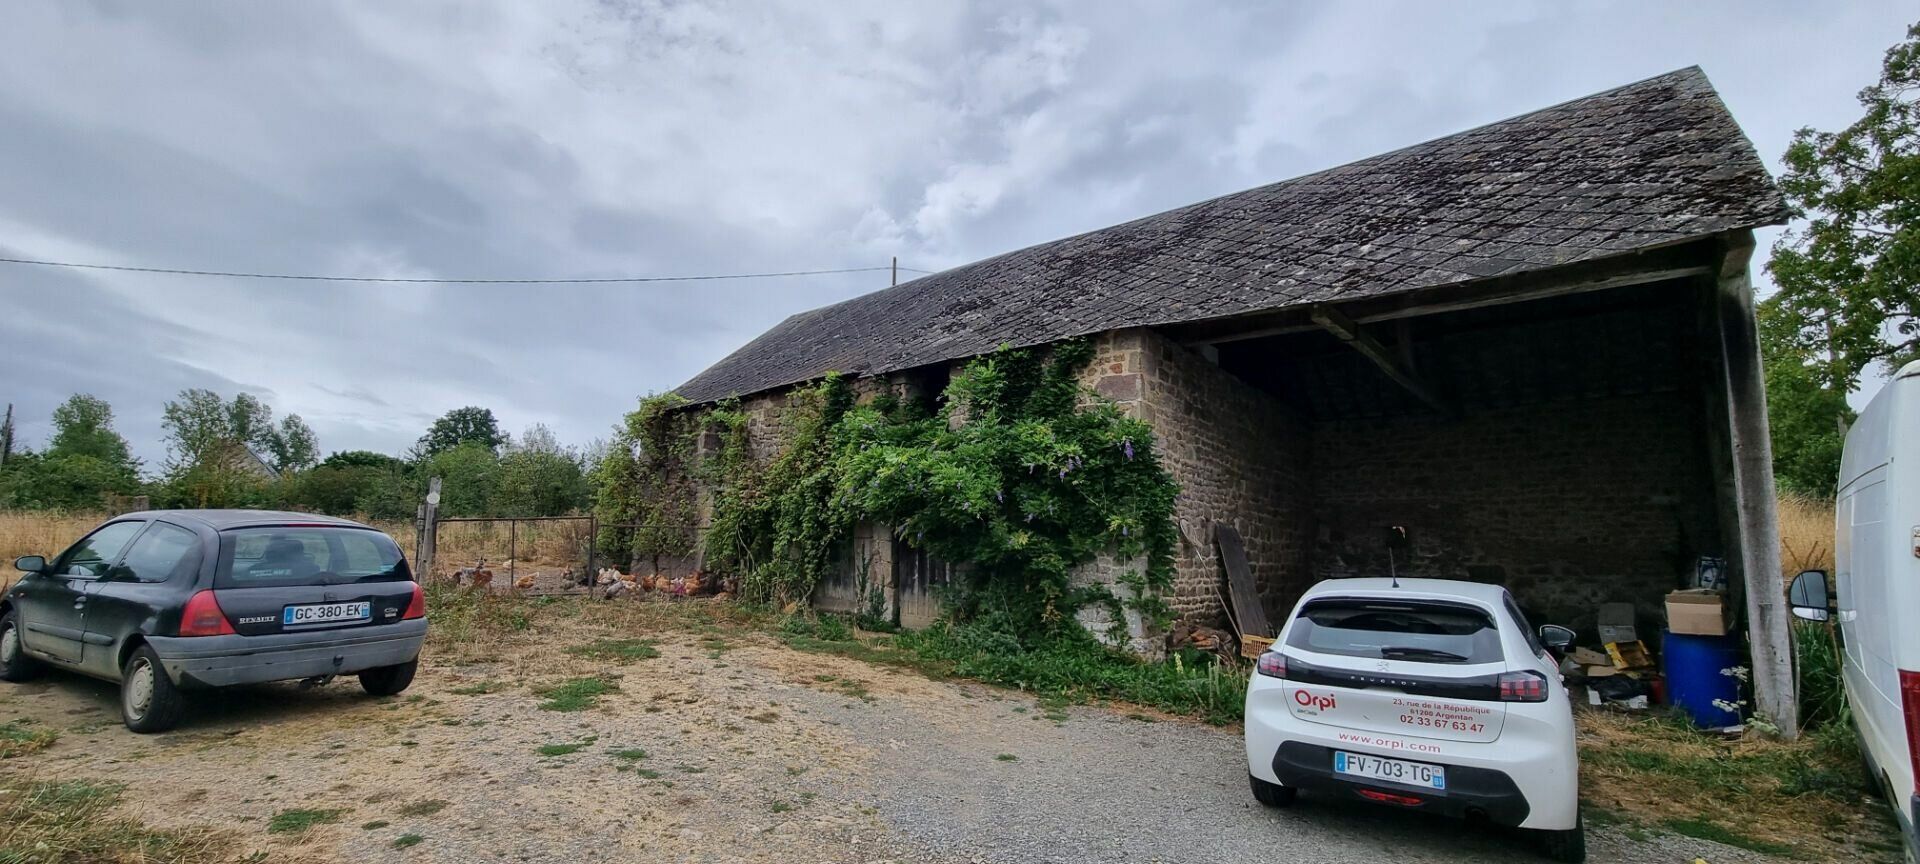 Maison à vendre 4 81m2 à Sainte-Croix-sur-Orne vignette-2